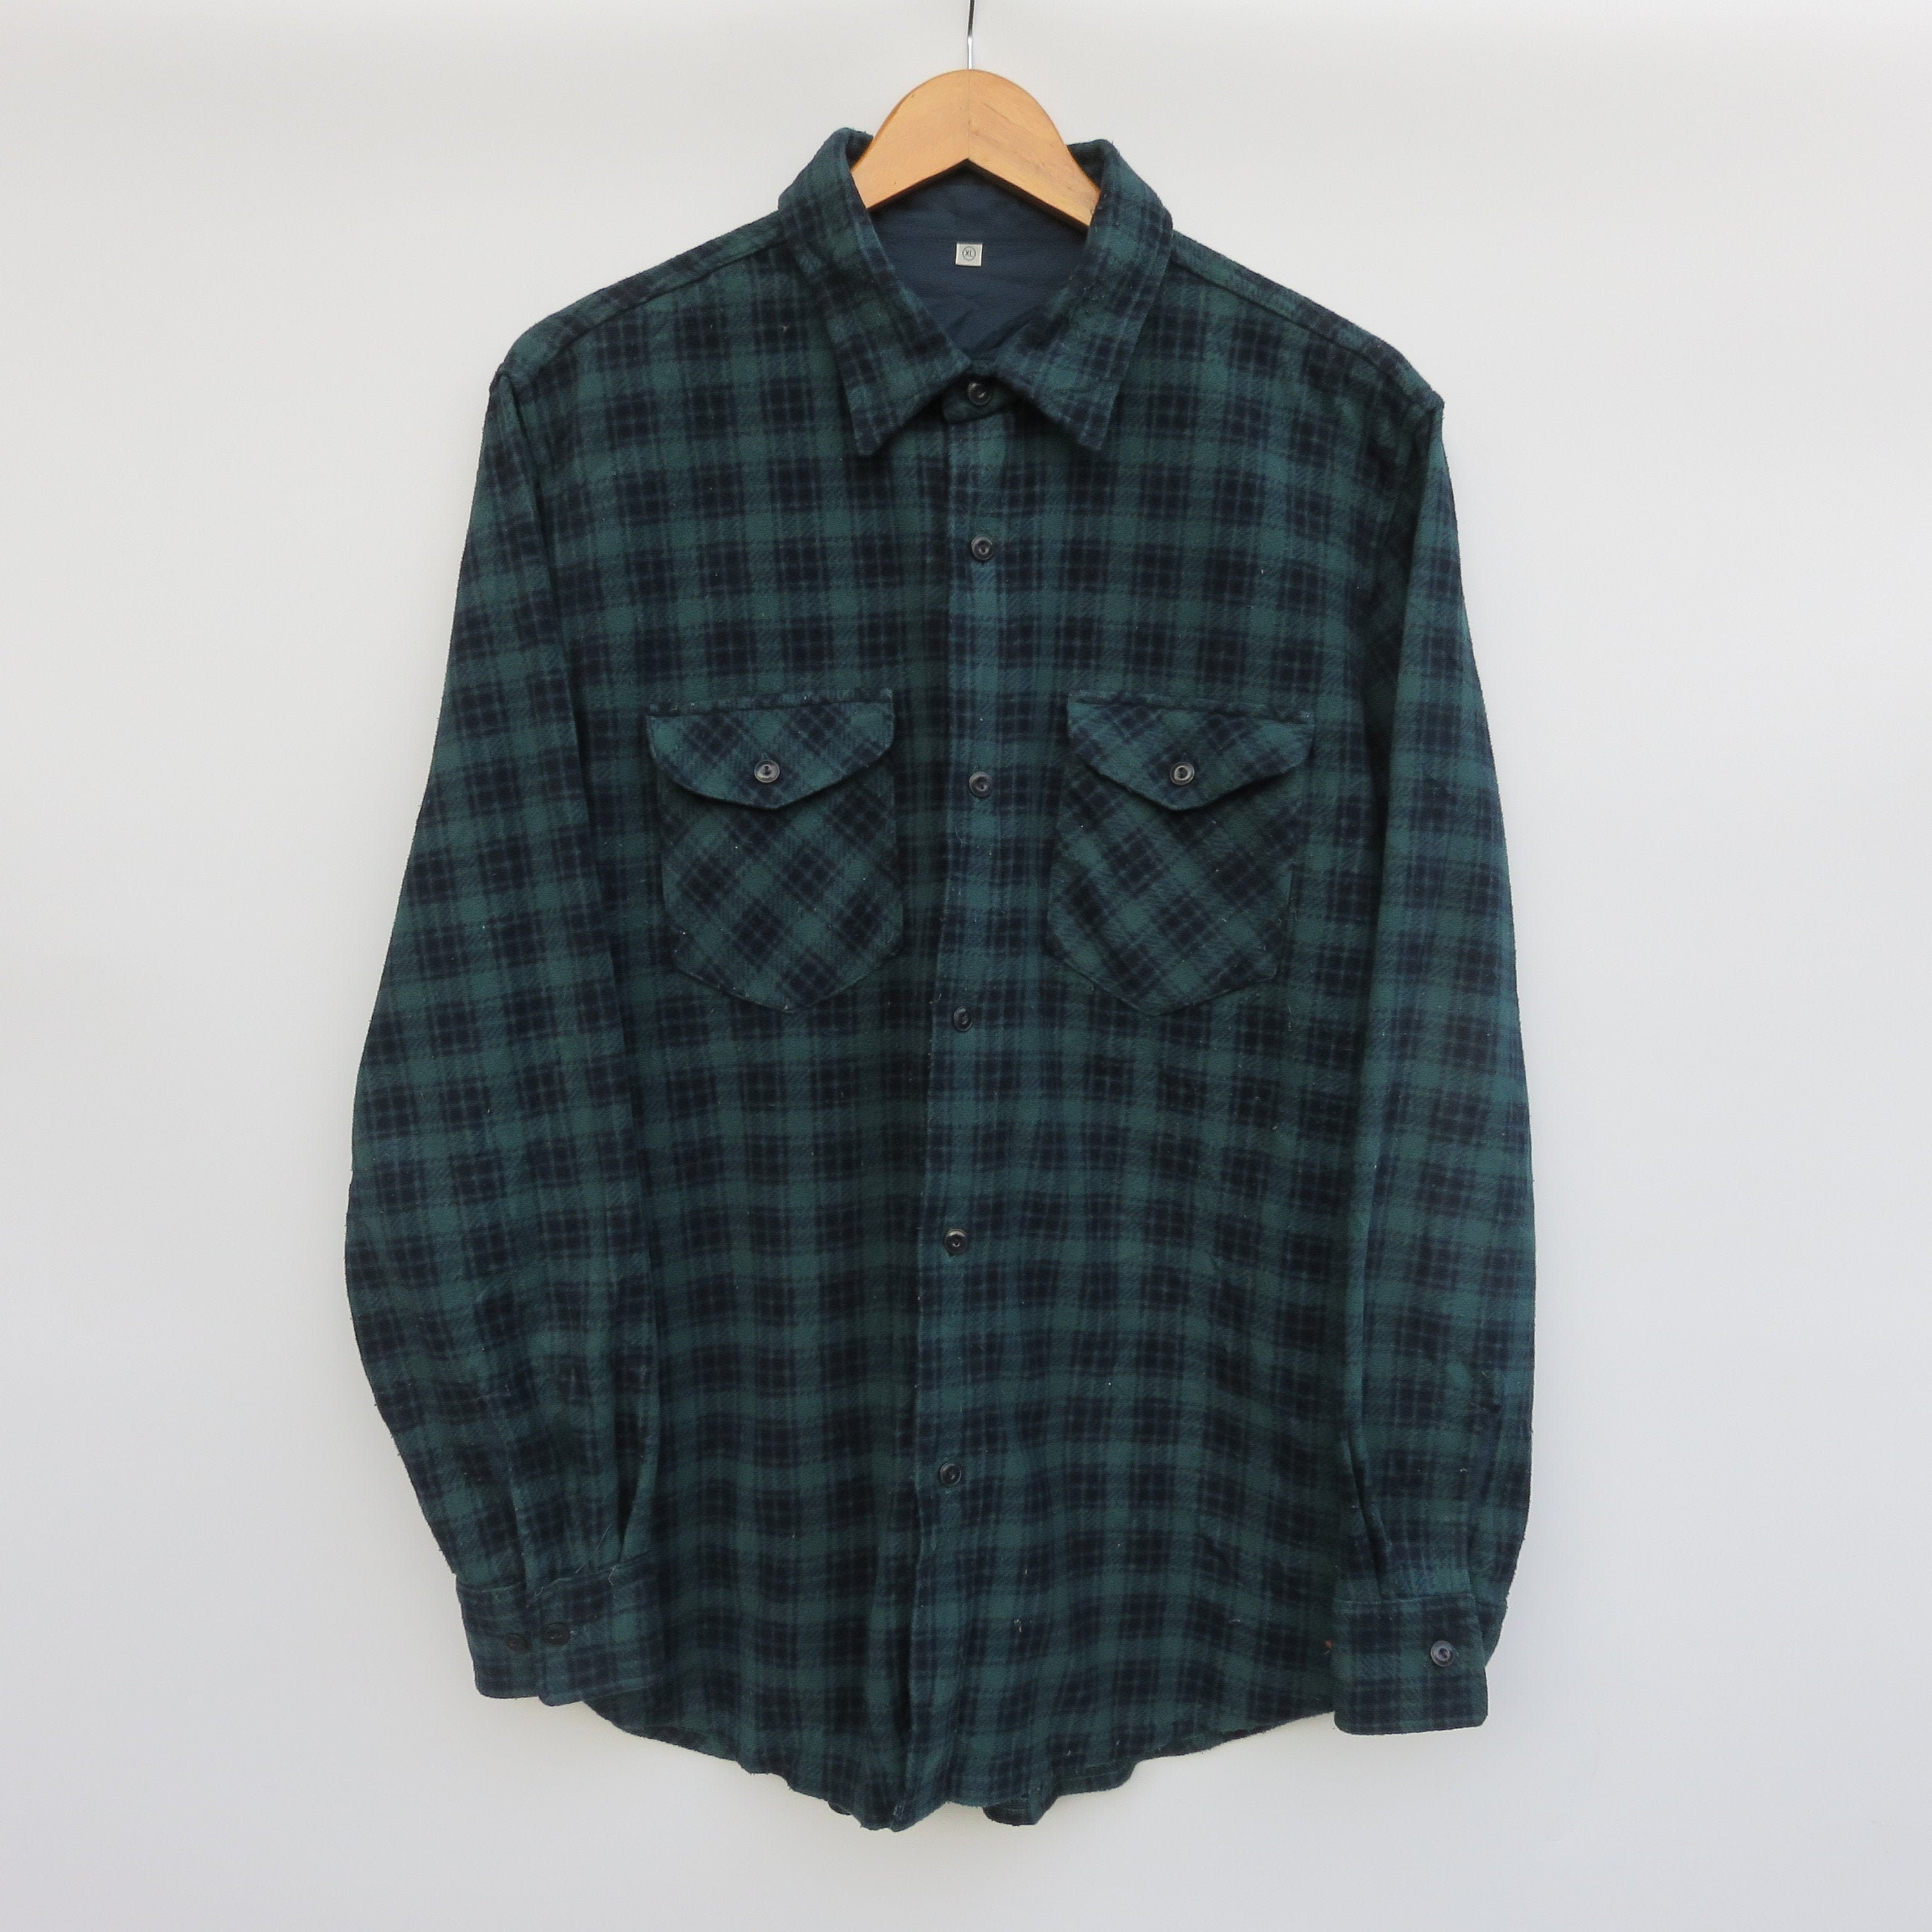 Vintage Flannel Shirt Streetwear Travis Scott Style Casual - Etsy UK